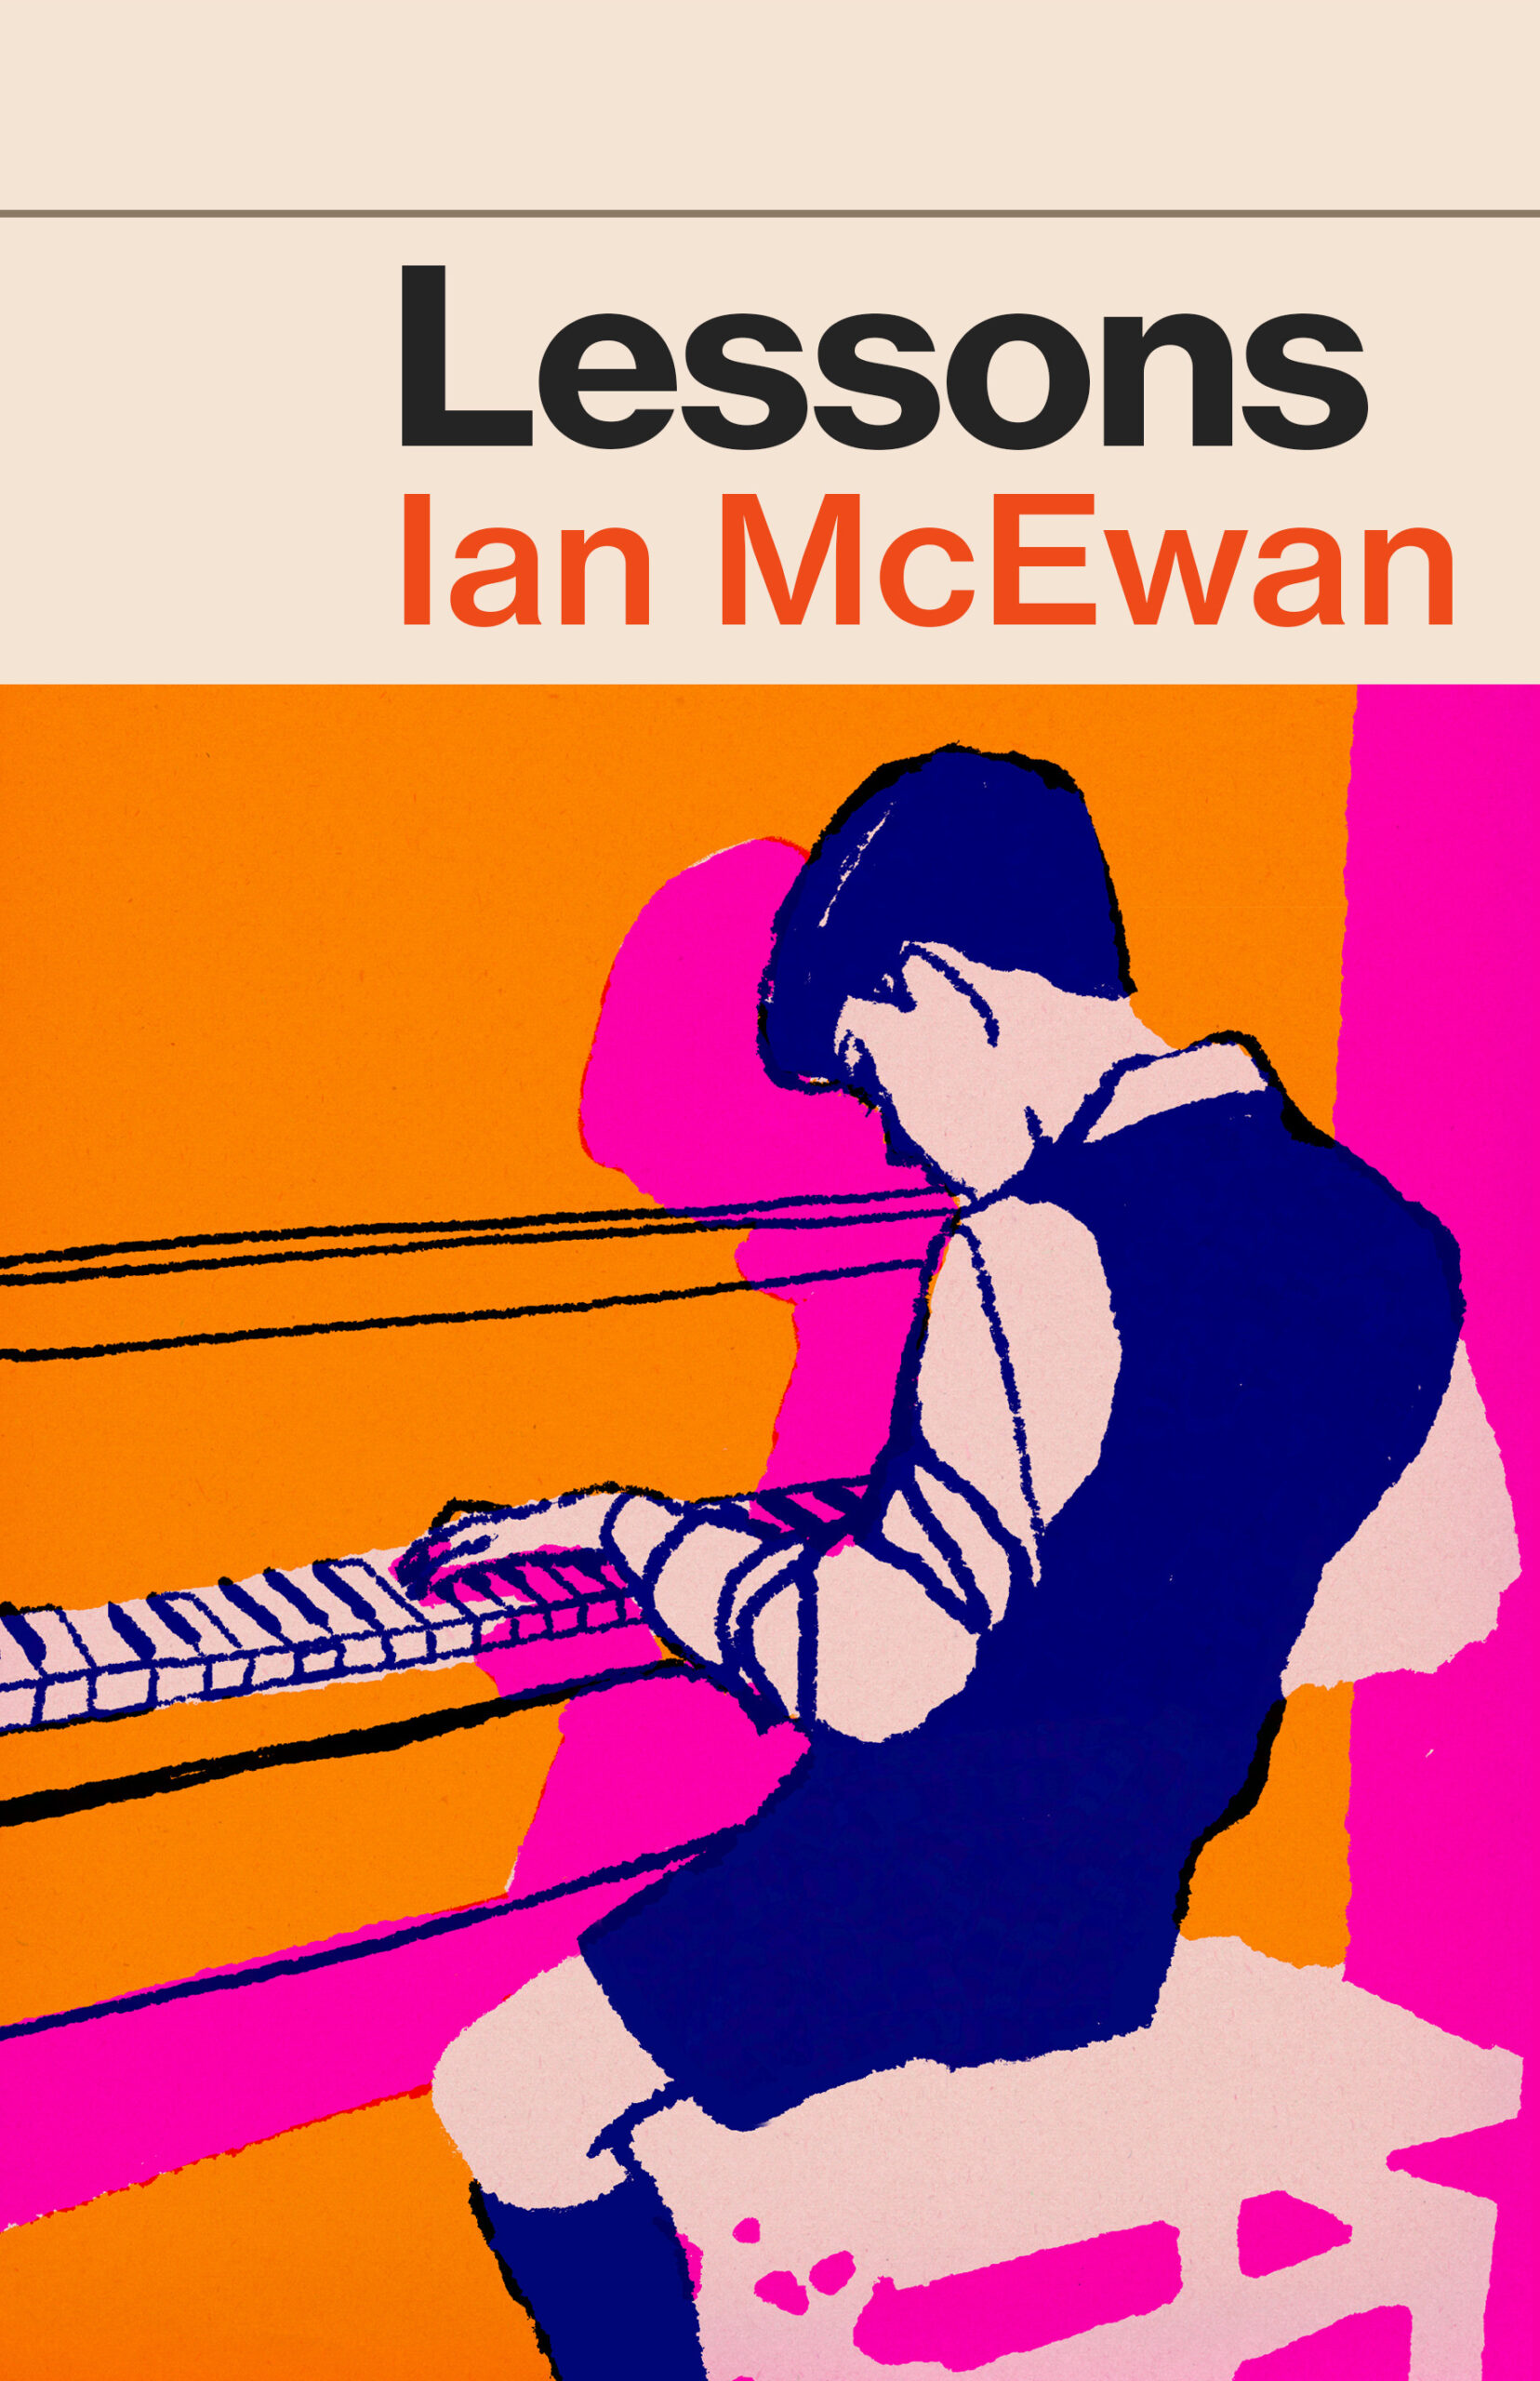 Ian McEwan's Lessons book cover